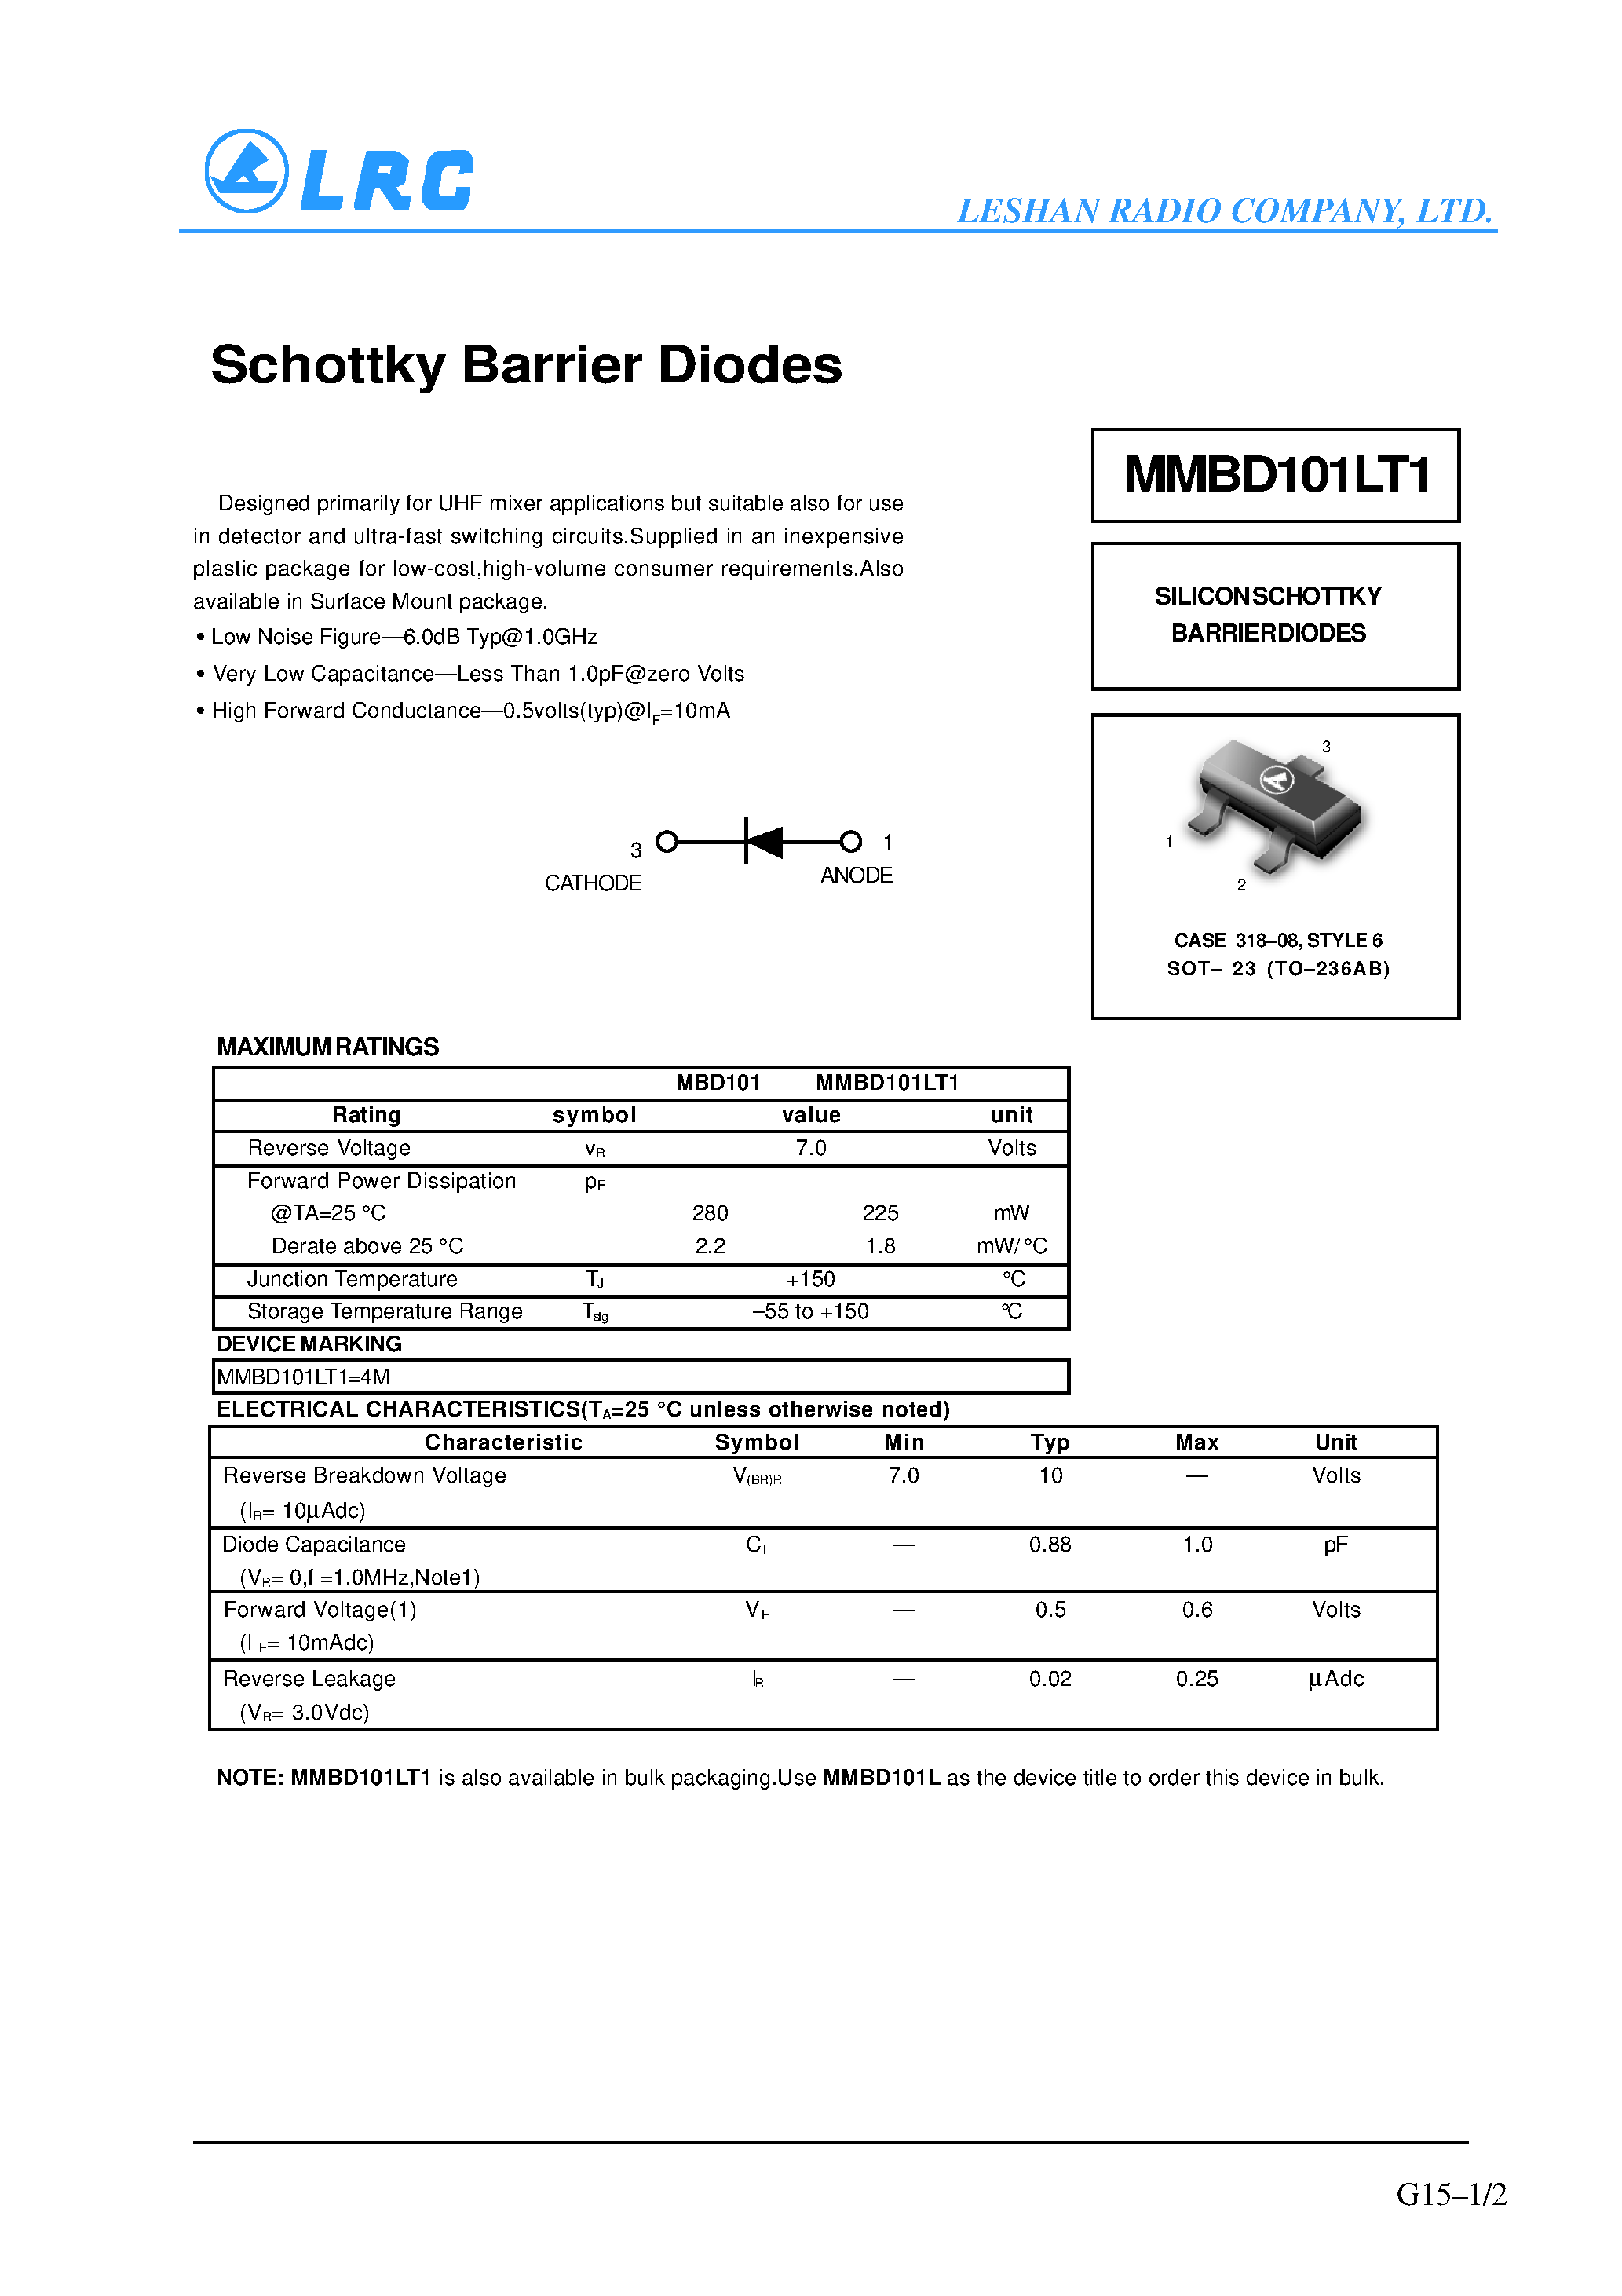 Datasheet MMBD101 - Schottky Barrier Diodes page 1